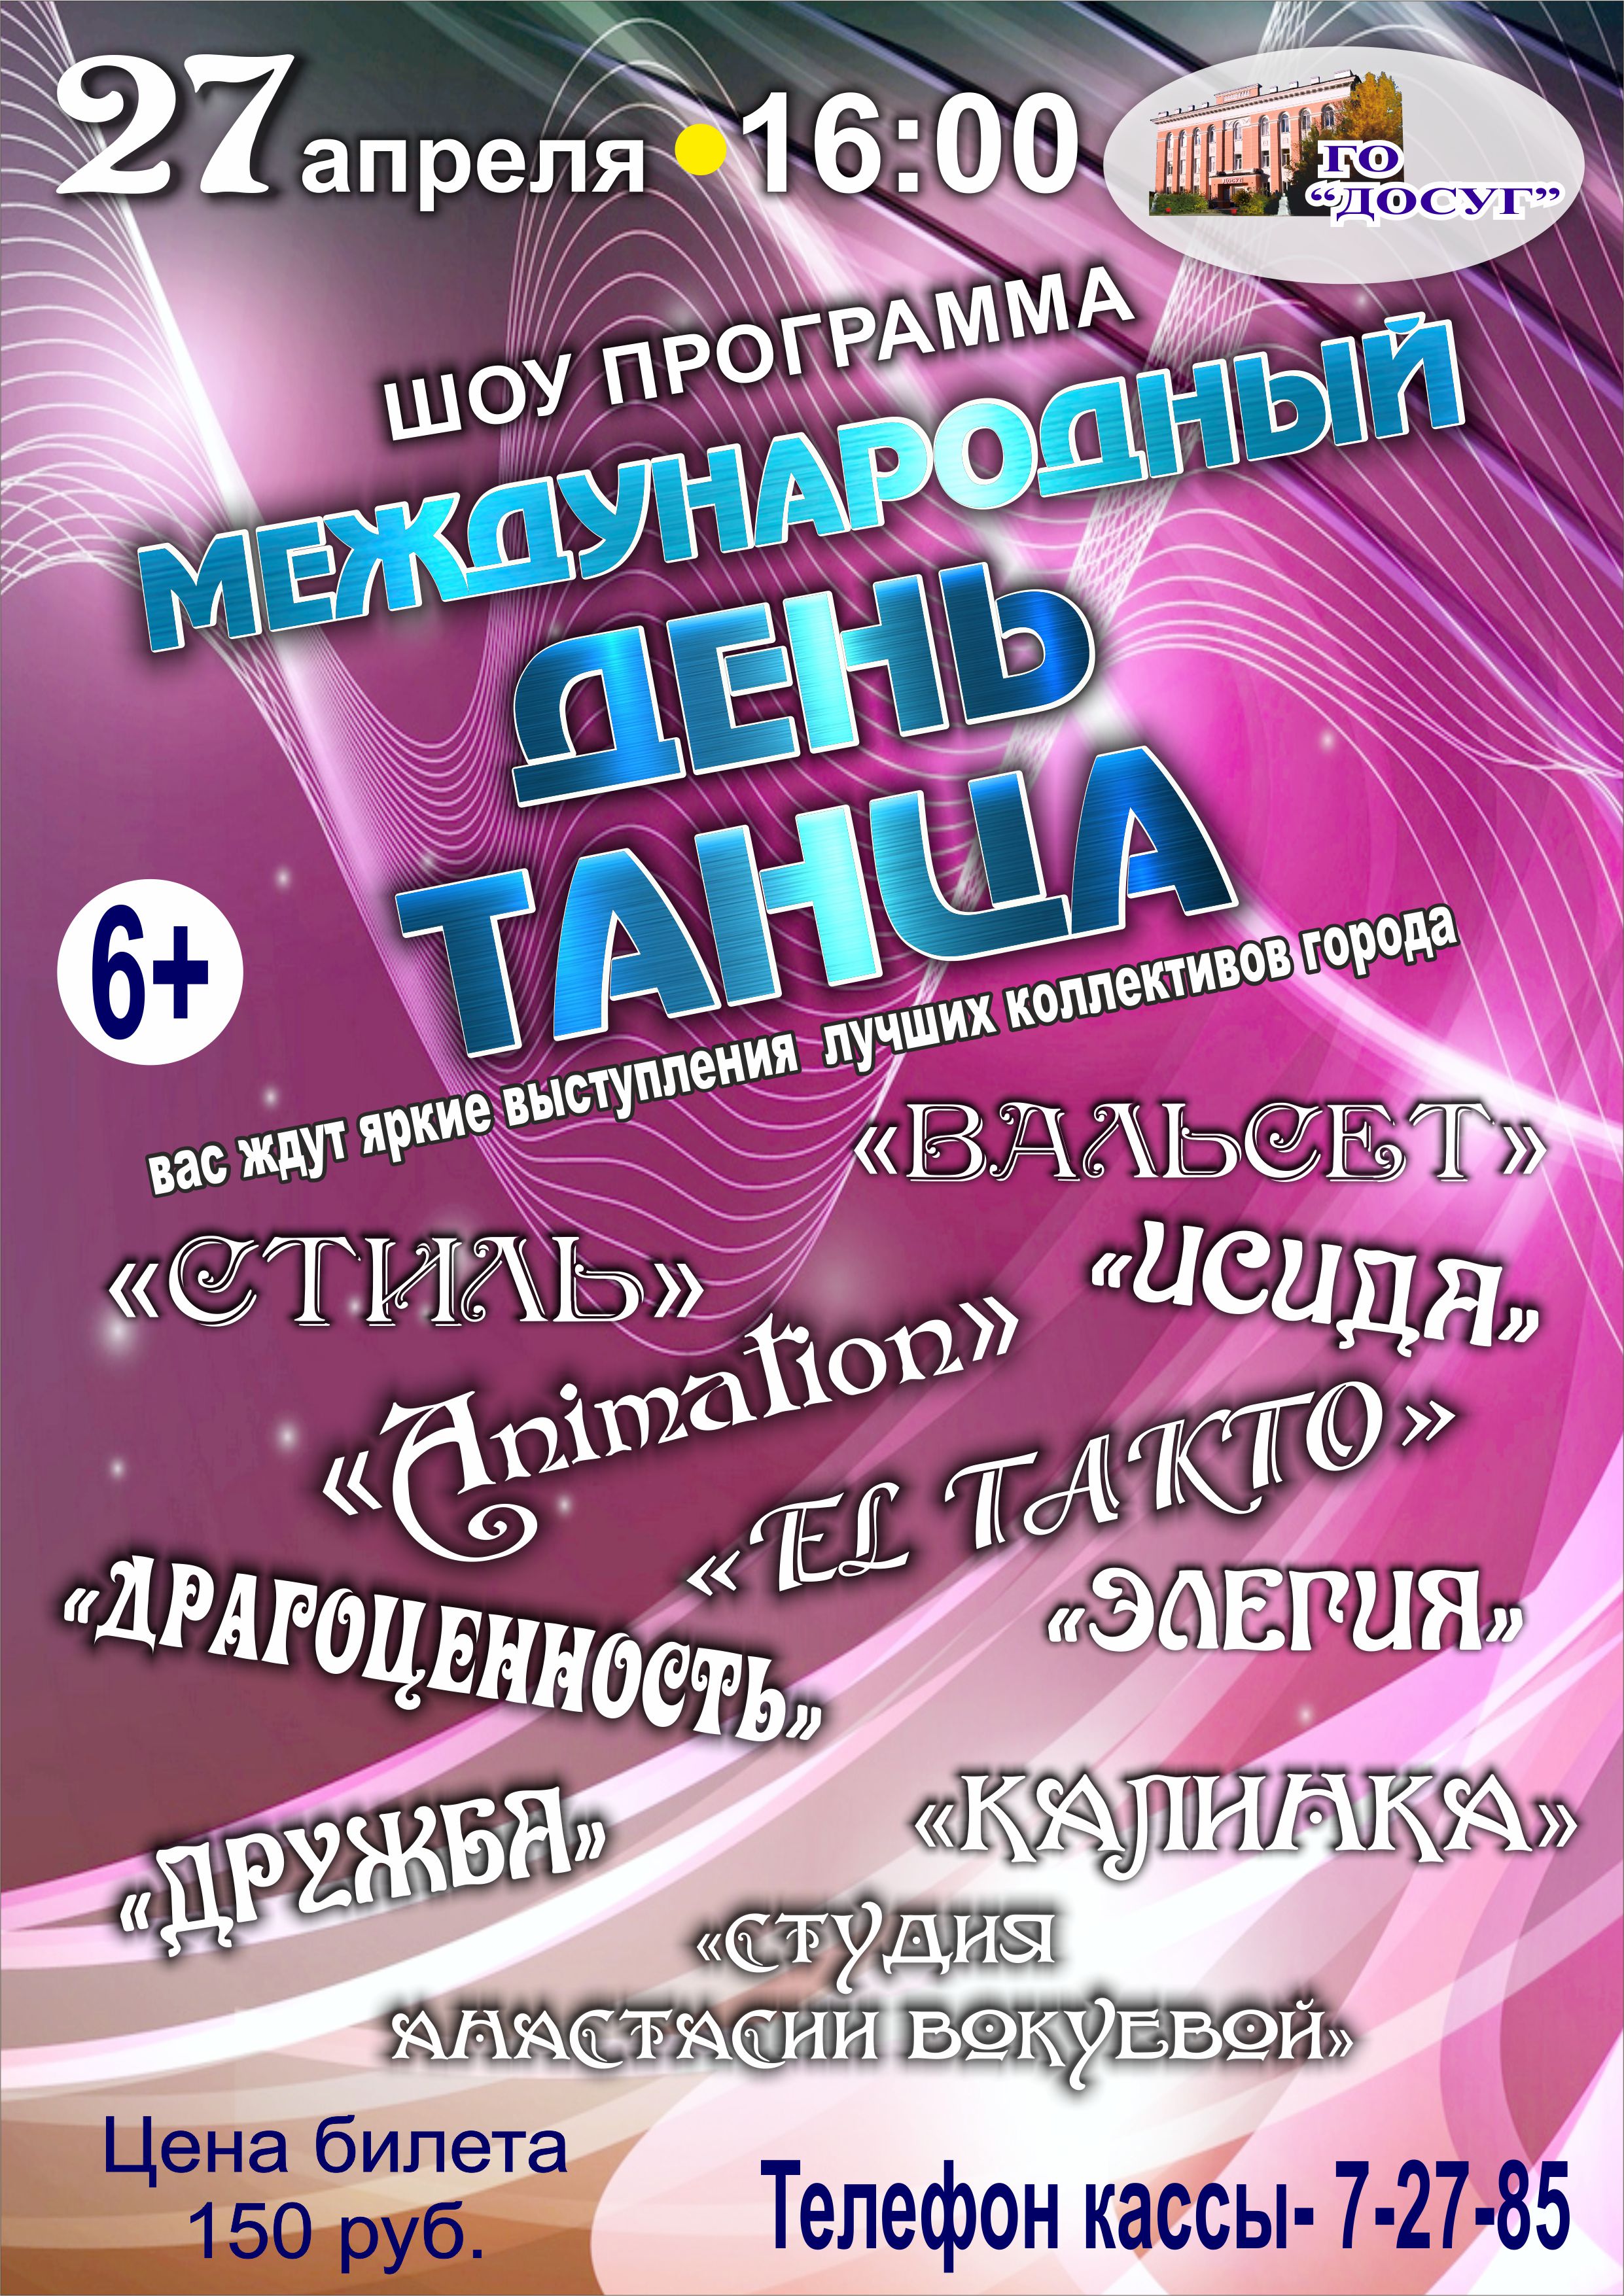 —- 27 апреля в 16.00  Шоу программа “Международный день танца” цена билета: 150 руб. возрастной ценз 6+